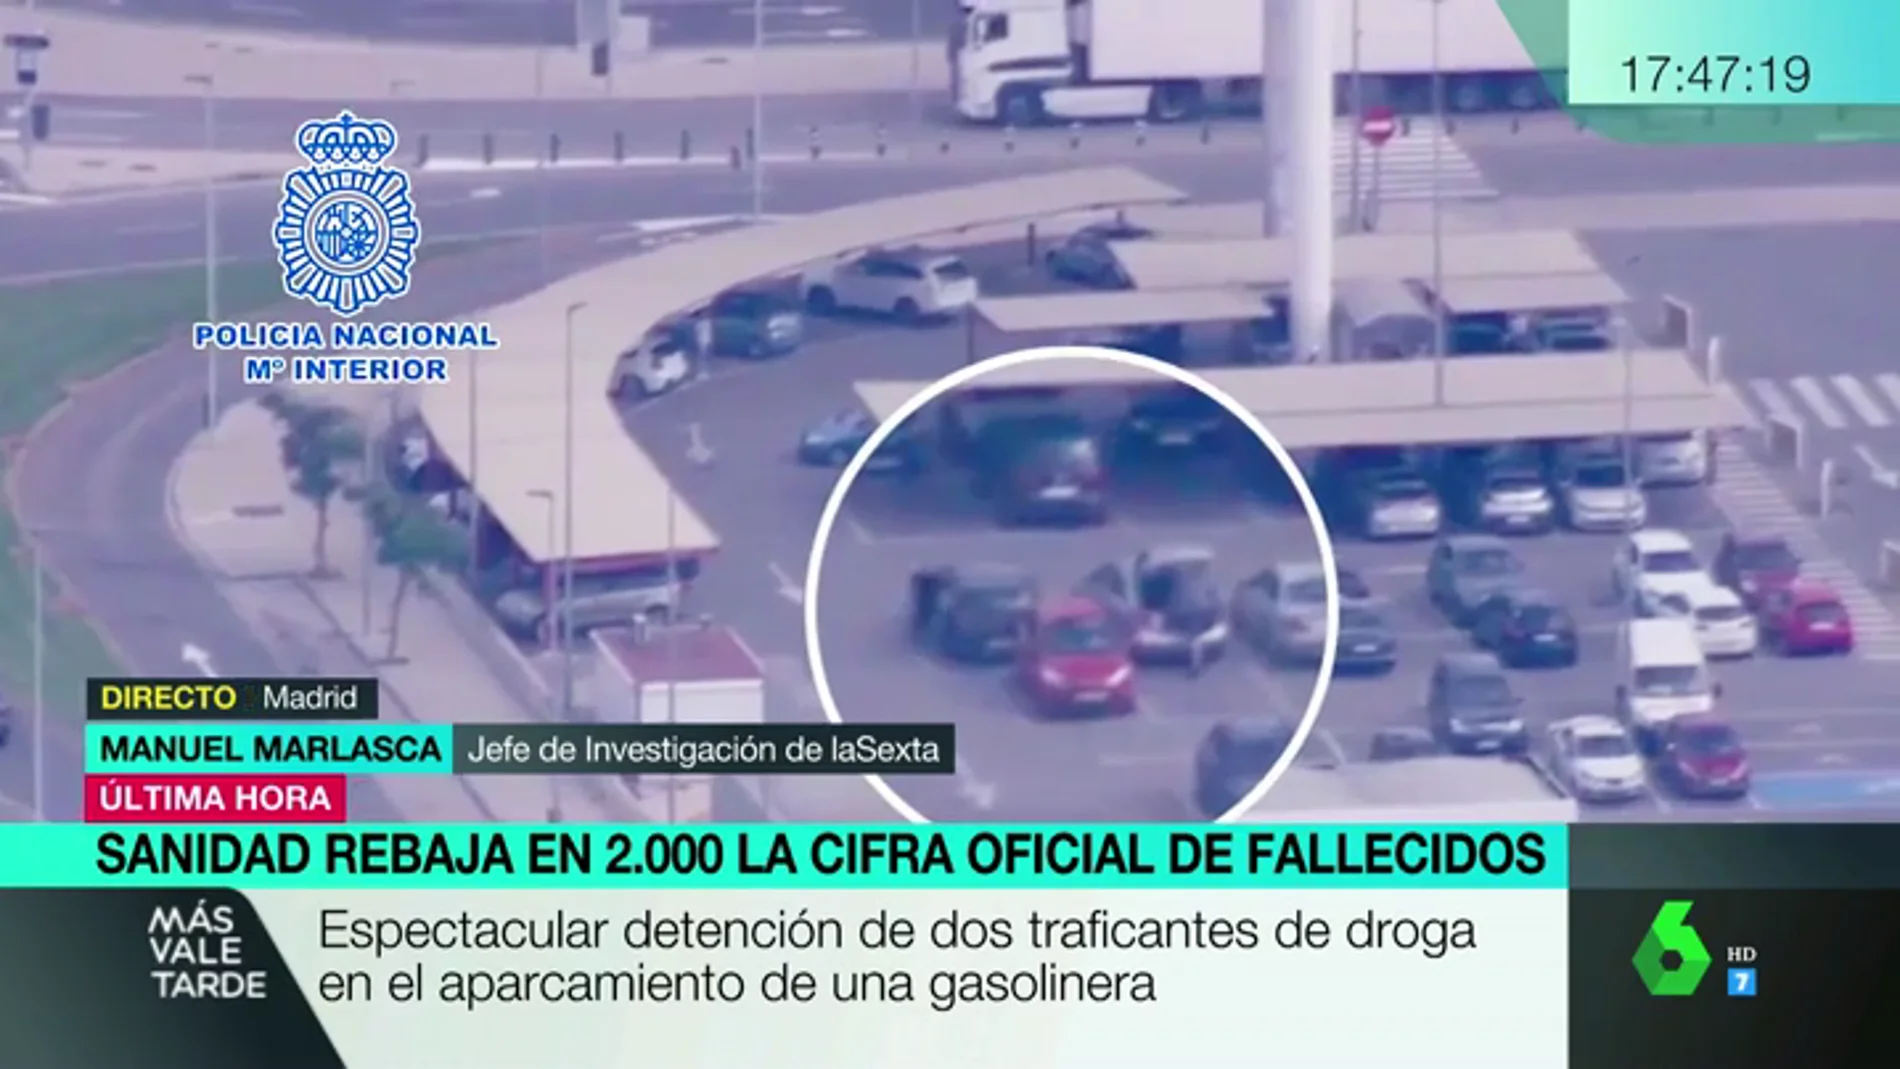 Espectacular detención de dos traficantes de drogas en un aparcamiento de Torrent, Valencia